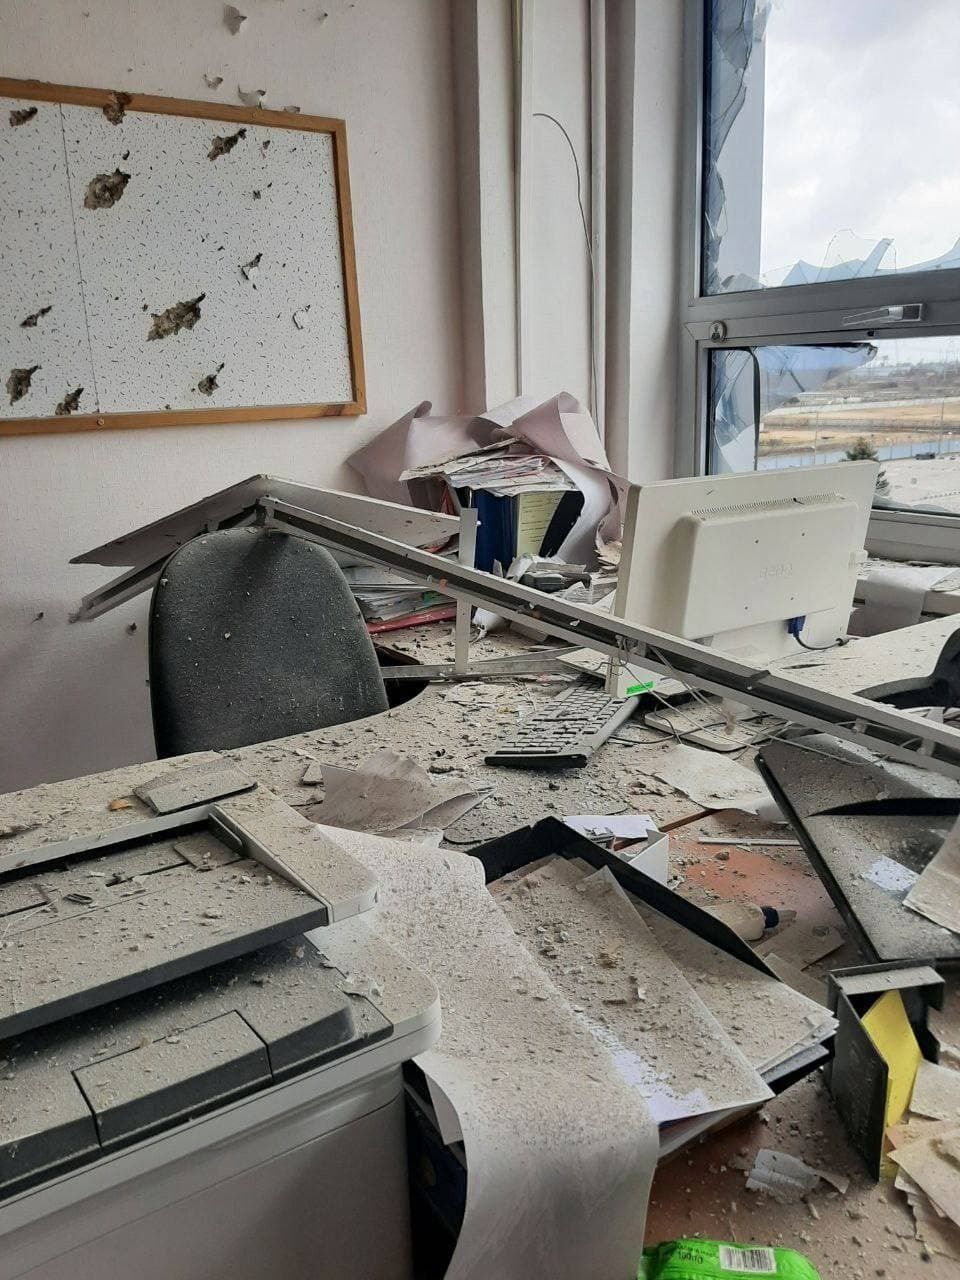 Дыры в стенах и выбитые окна: в сети показали последствия атаки оккупантов на админкорпус Запорожской АЭС. Фото